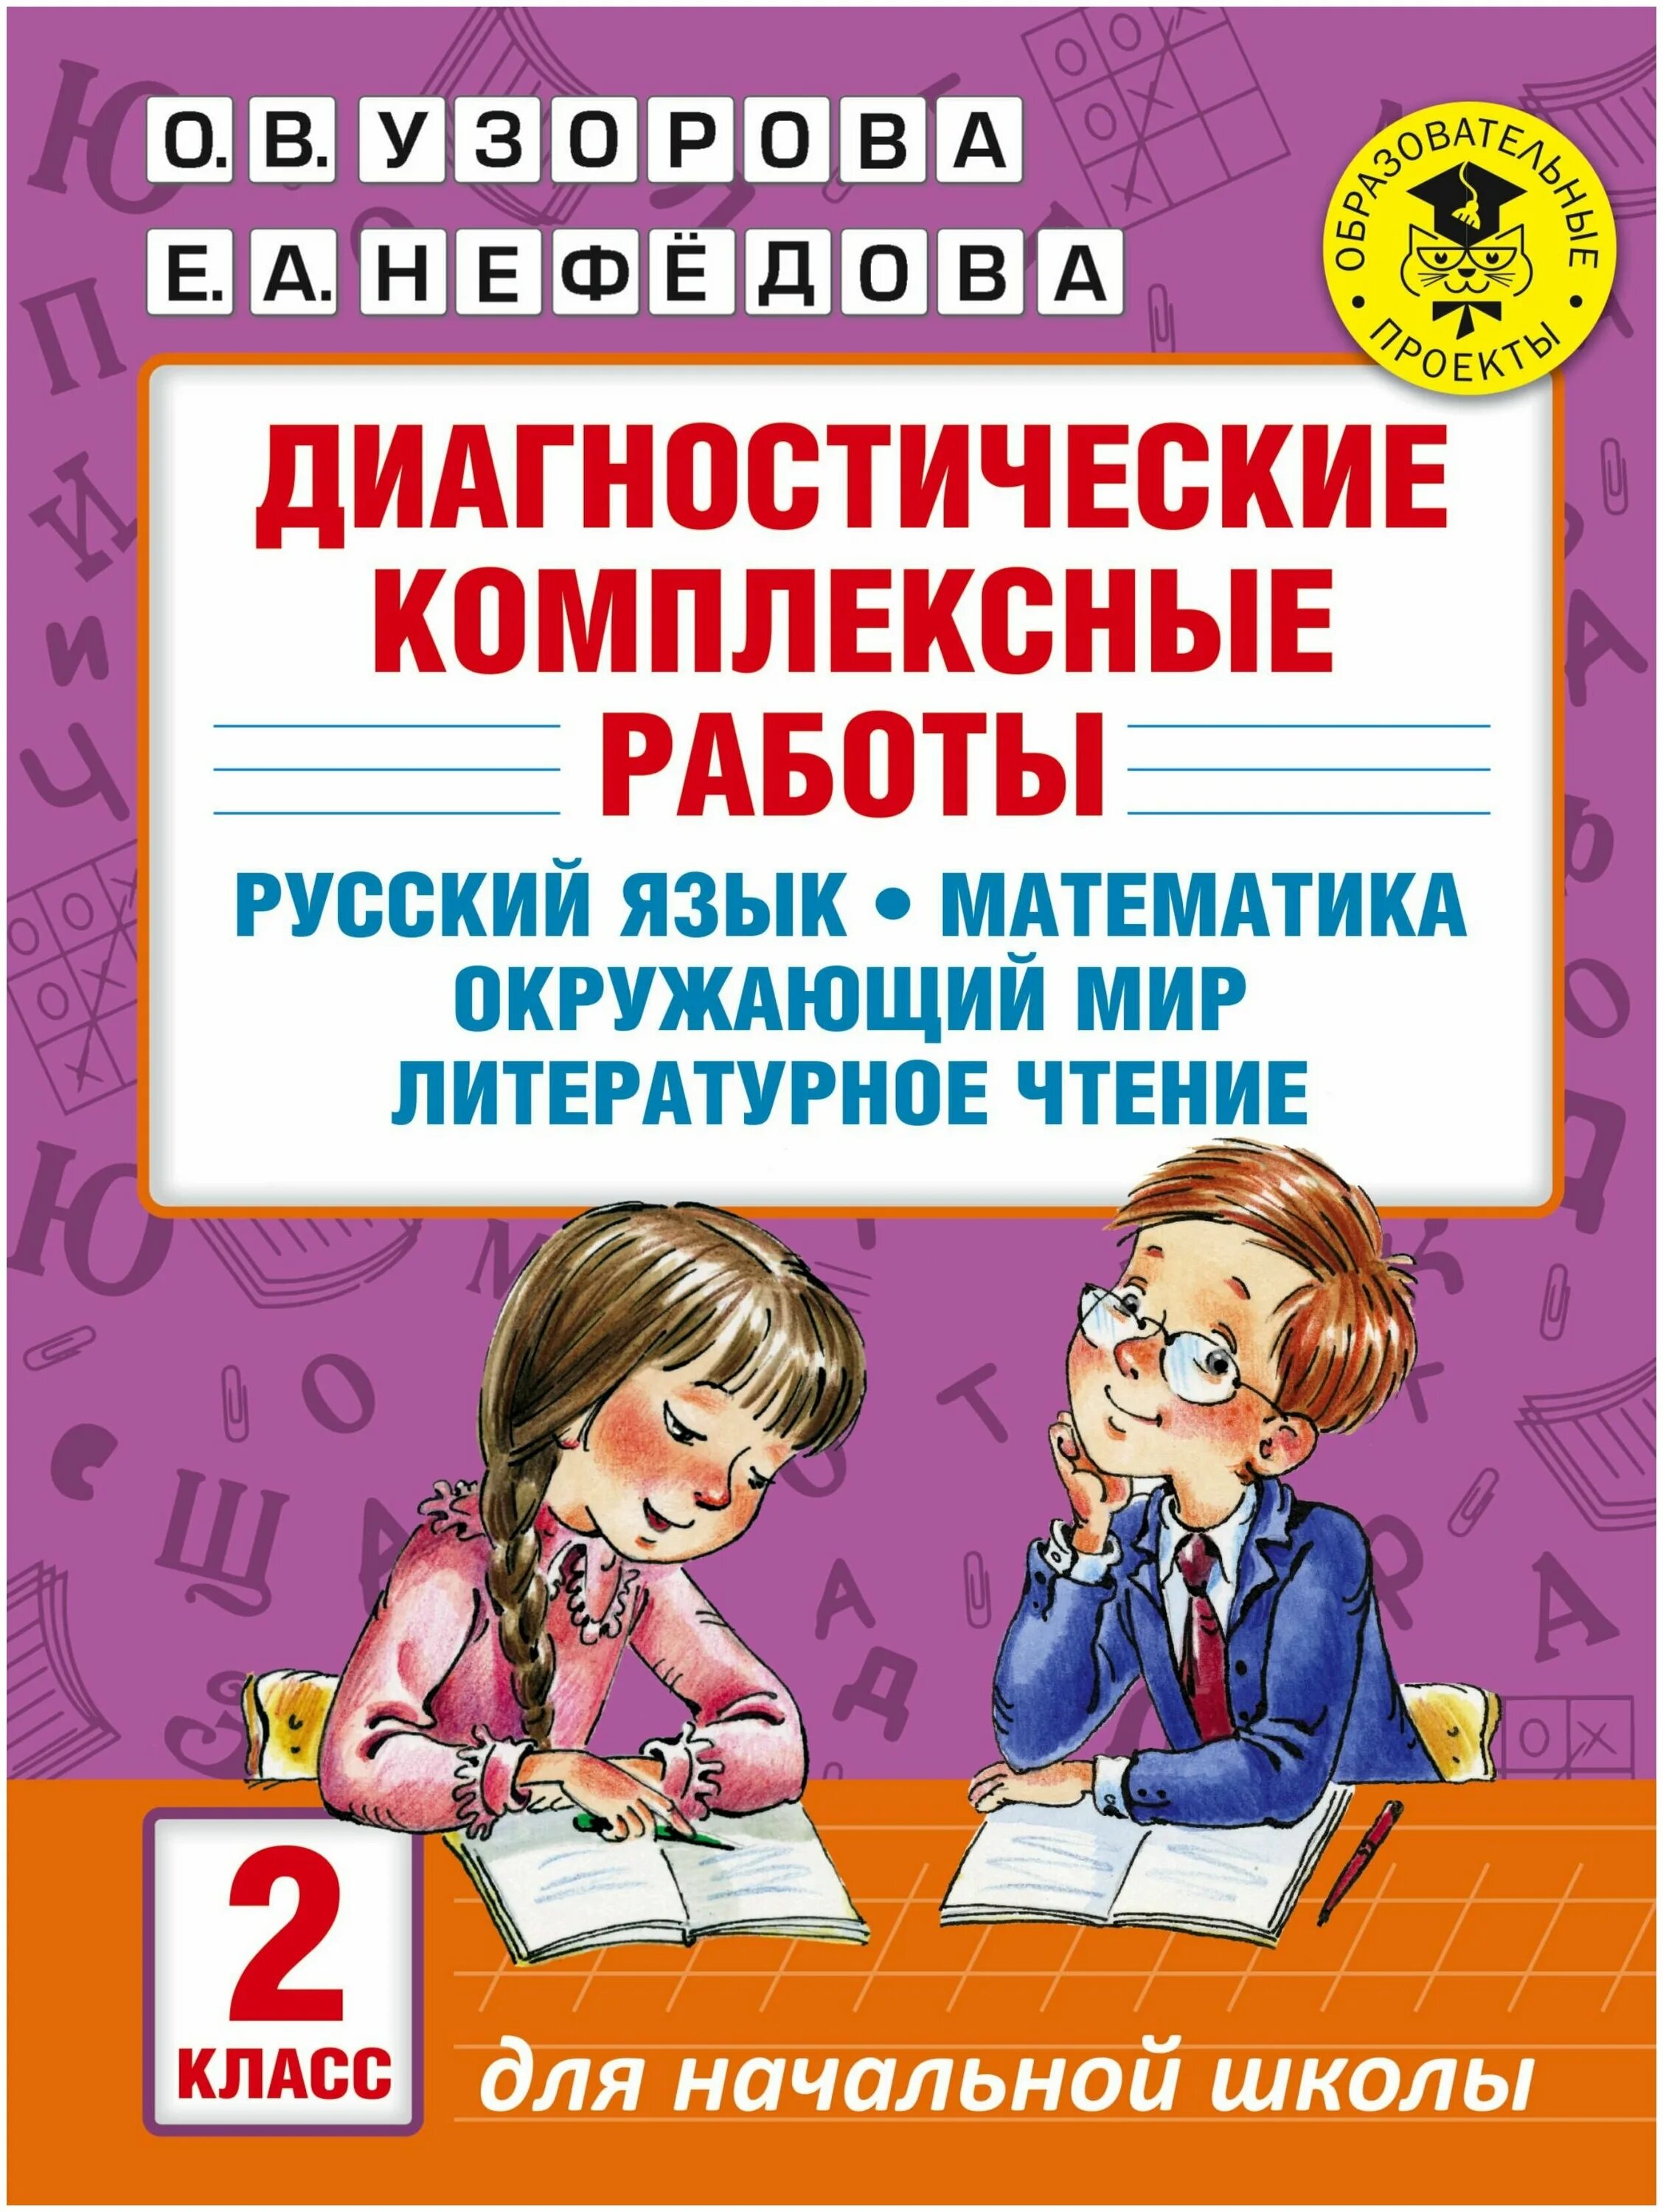 Русский язык математика чтение 4 класс